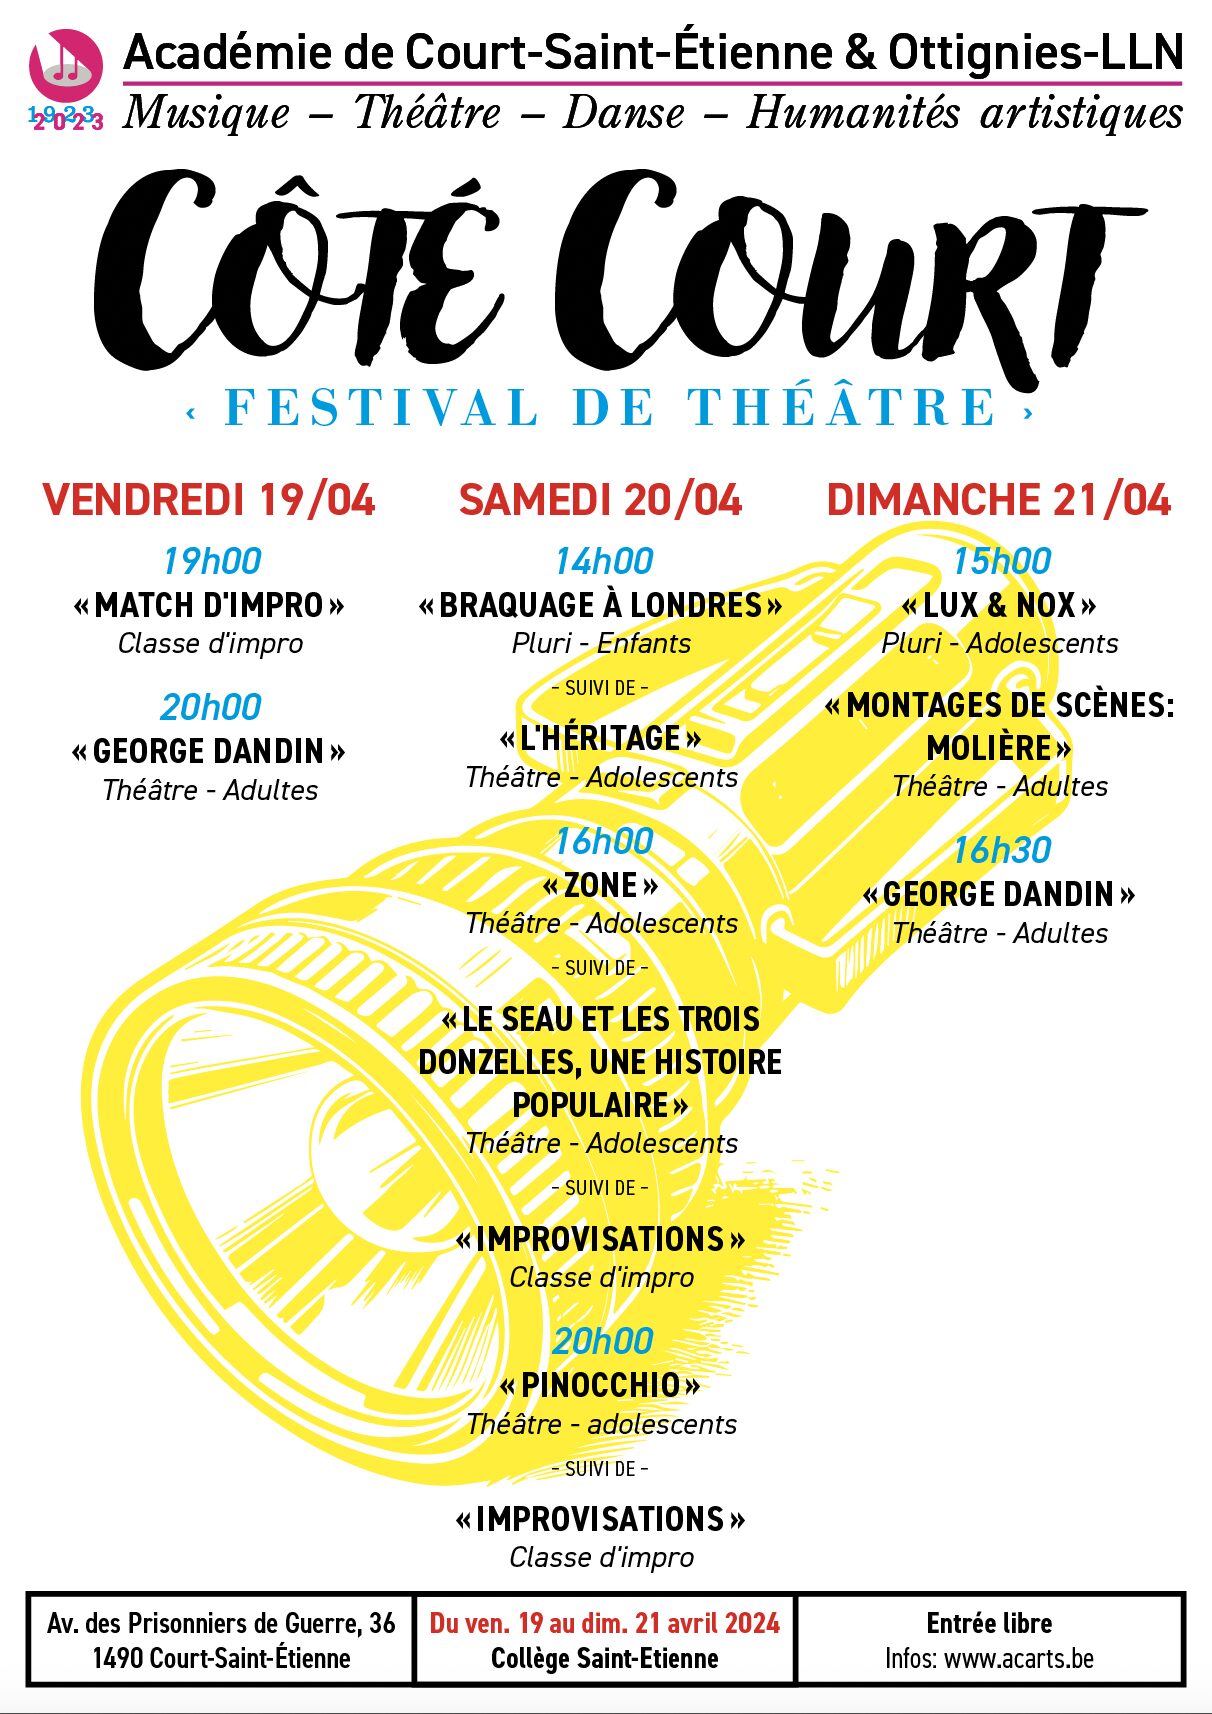 Affiche du festival de théâtre "Coté Court" du vendredi 19 au dimanche 21 avril 2024